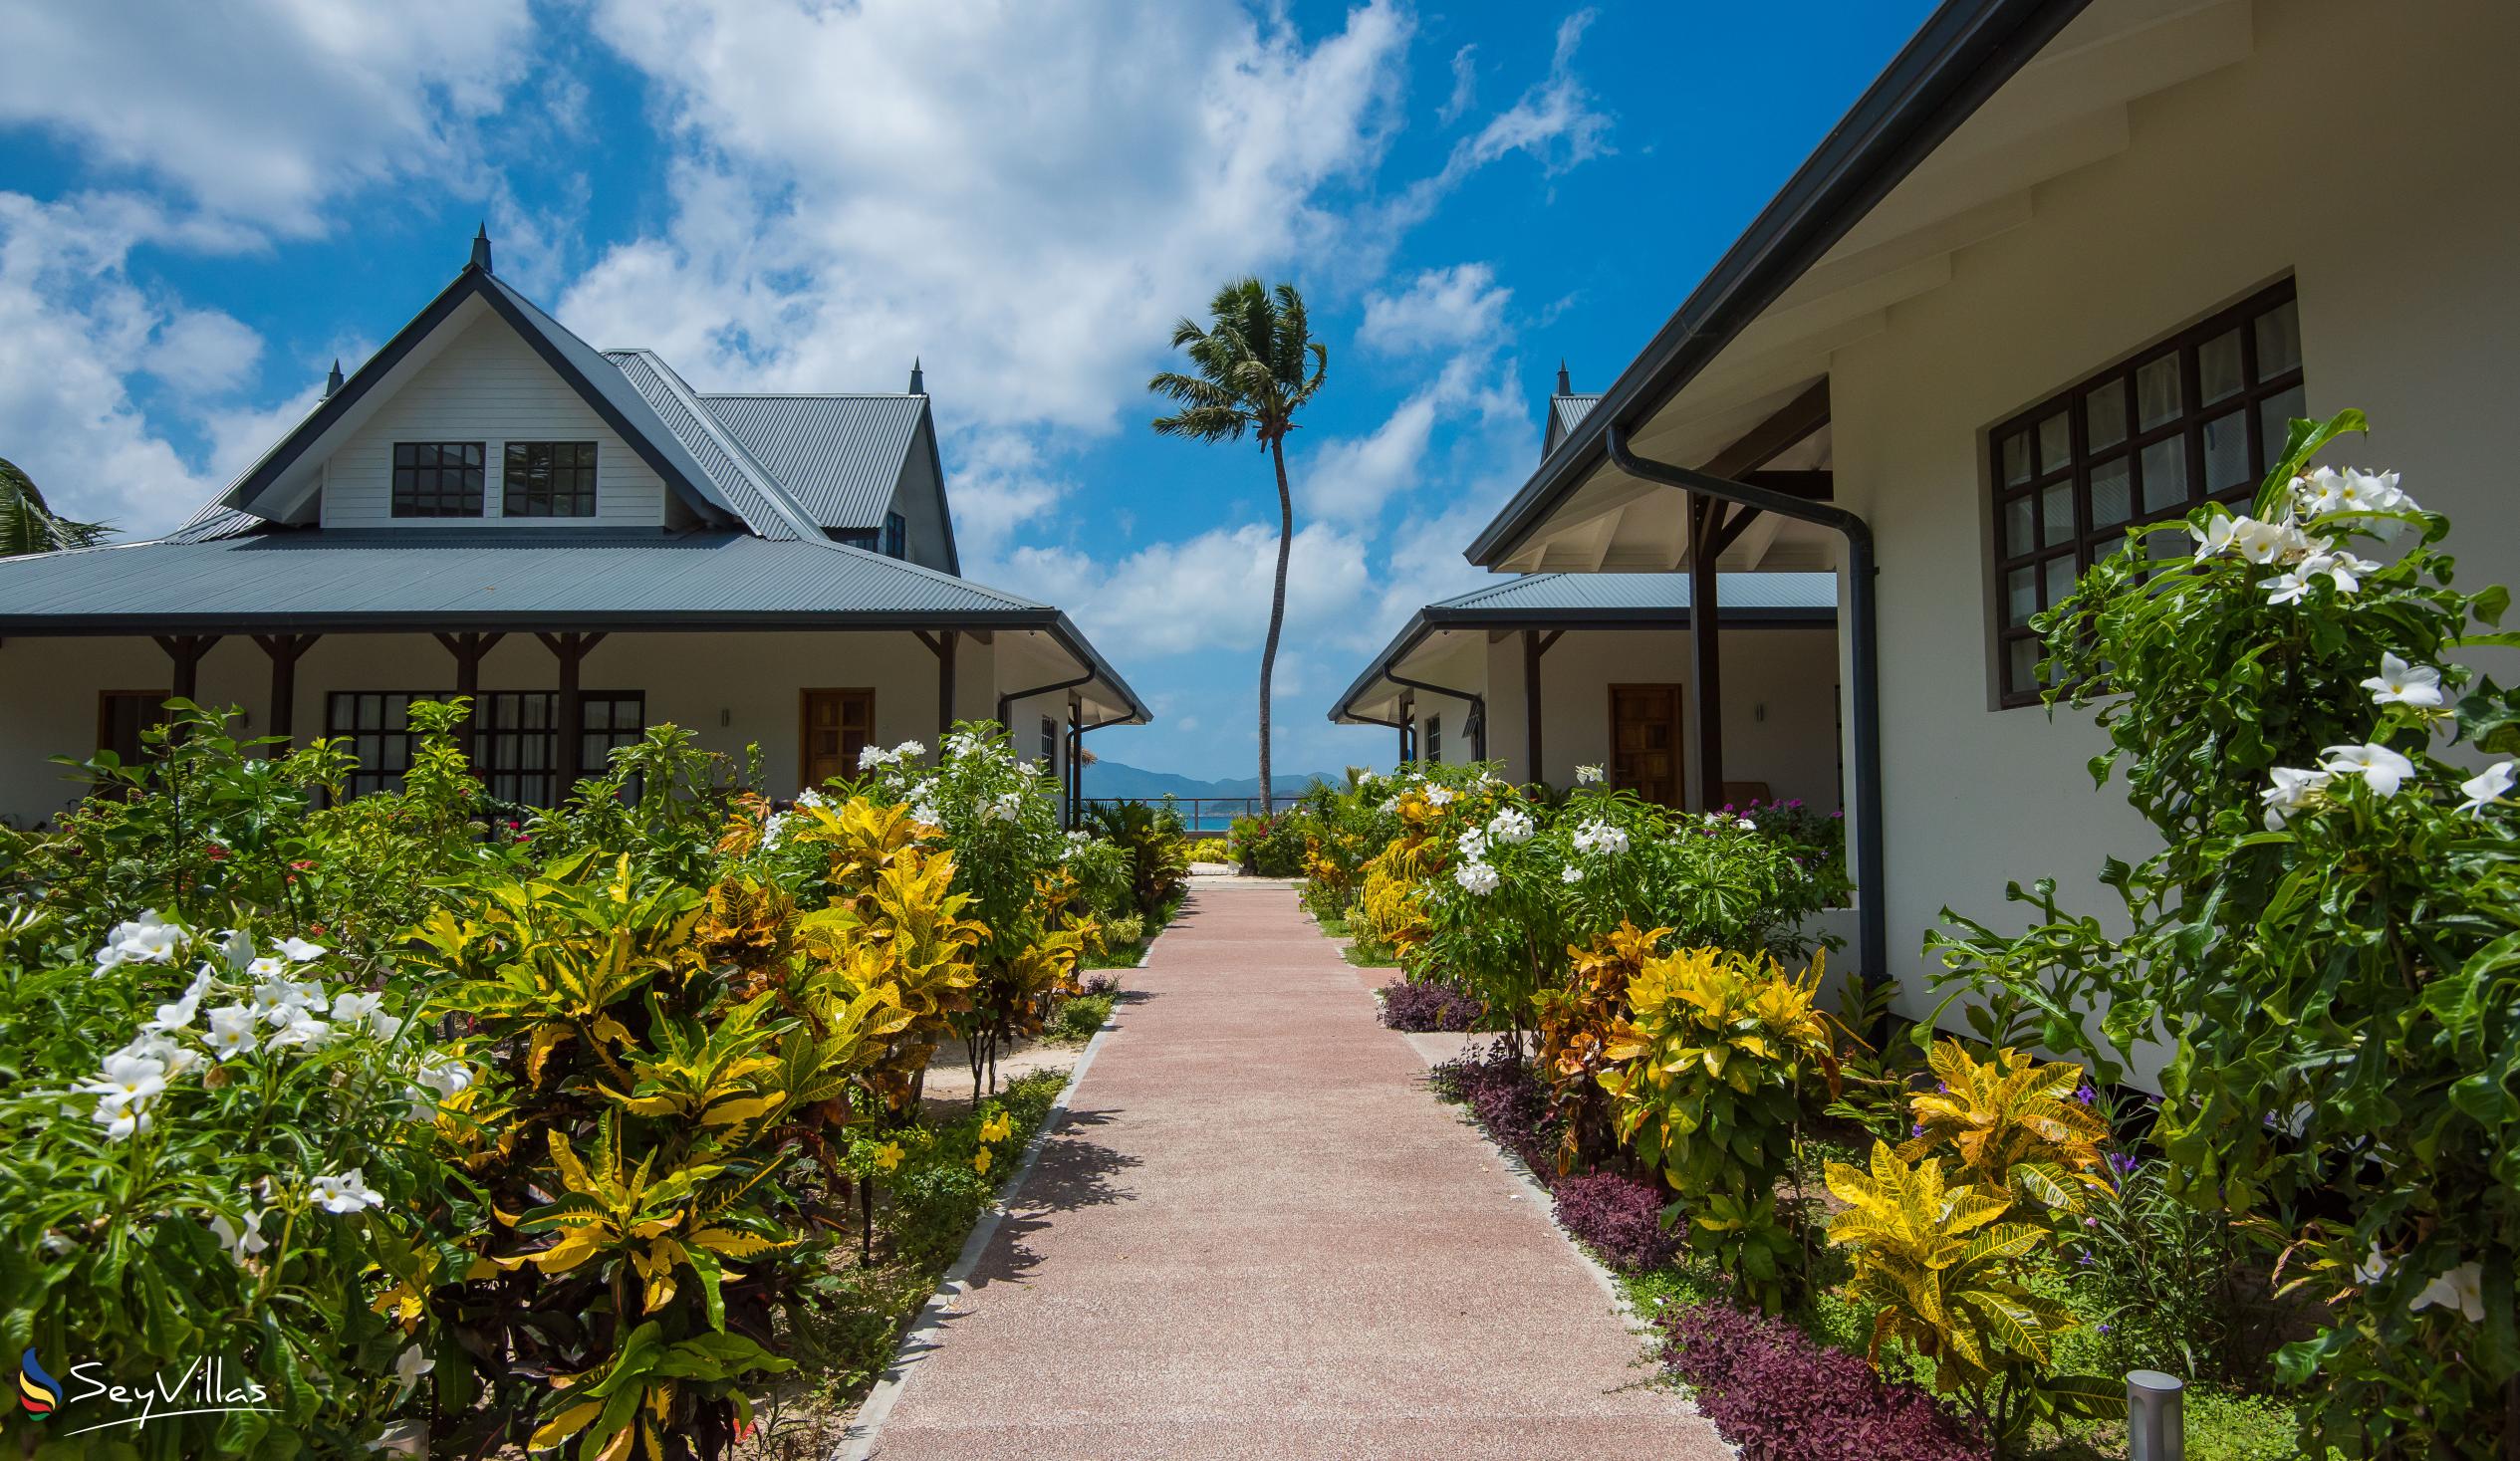 Foto 5: Le Nautique Luxury Waterfront Hotel - Aussenbereich - La Digue (Seychellen)